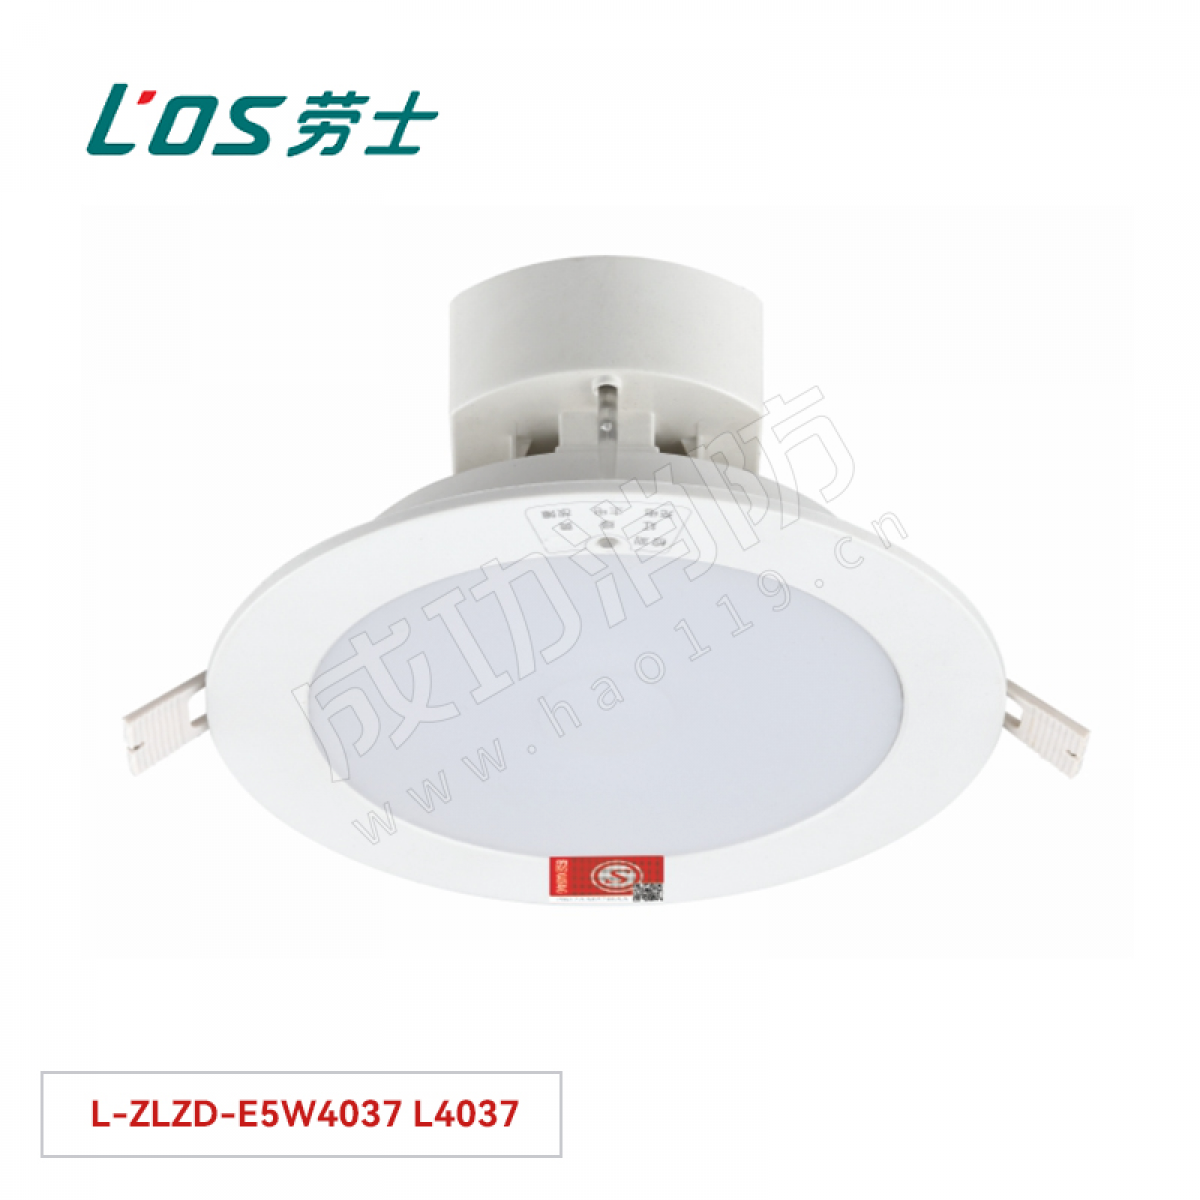 劳士 消防应急照明灯(嵌顶安装) L-ZLZD-E5W4037 L4037